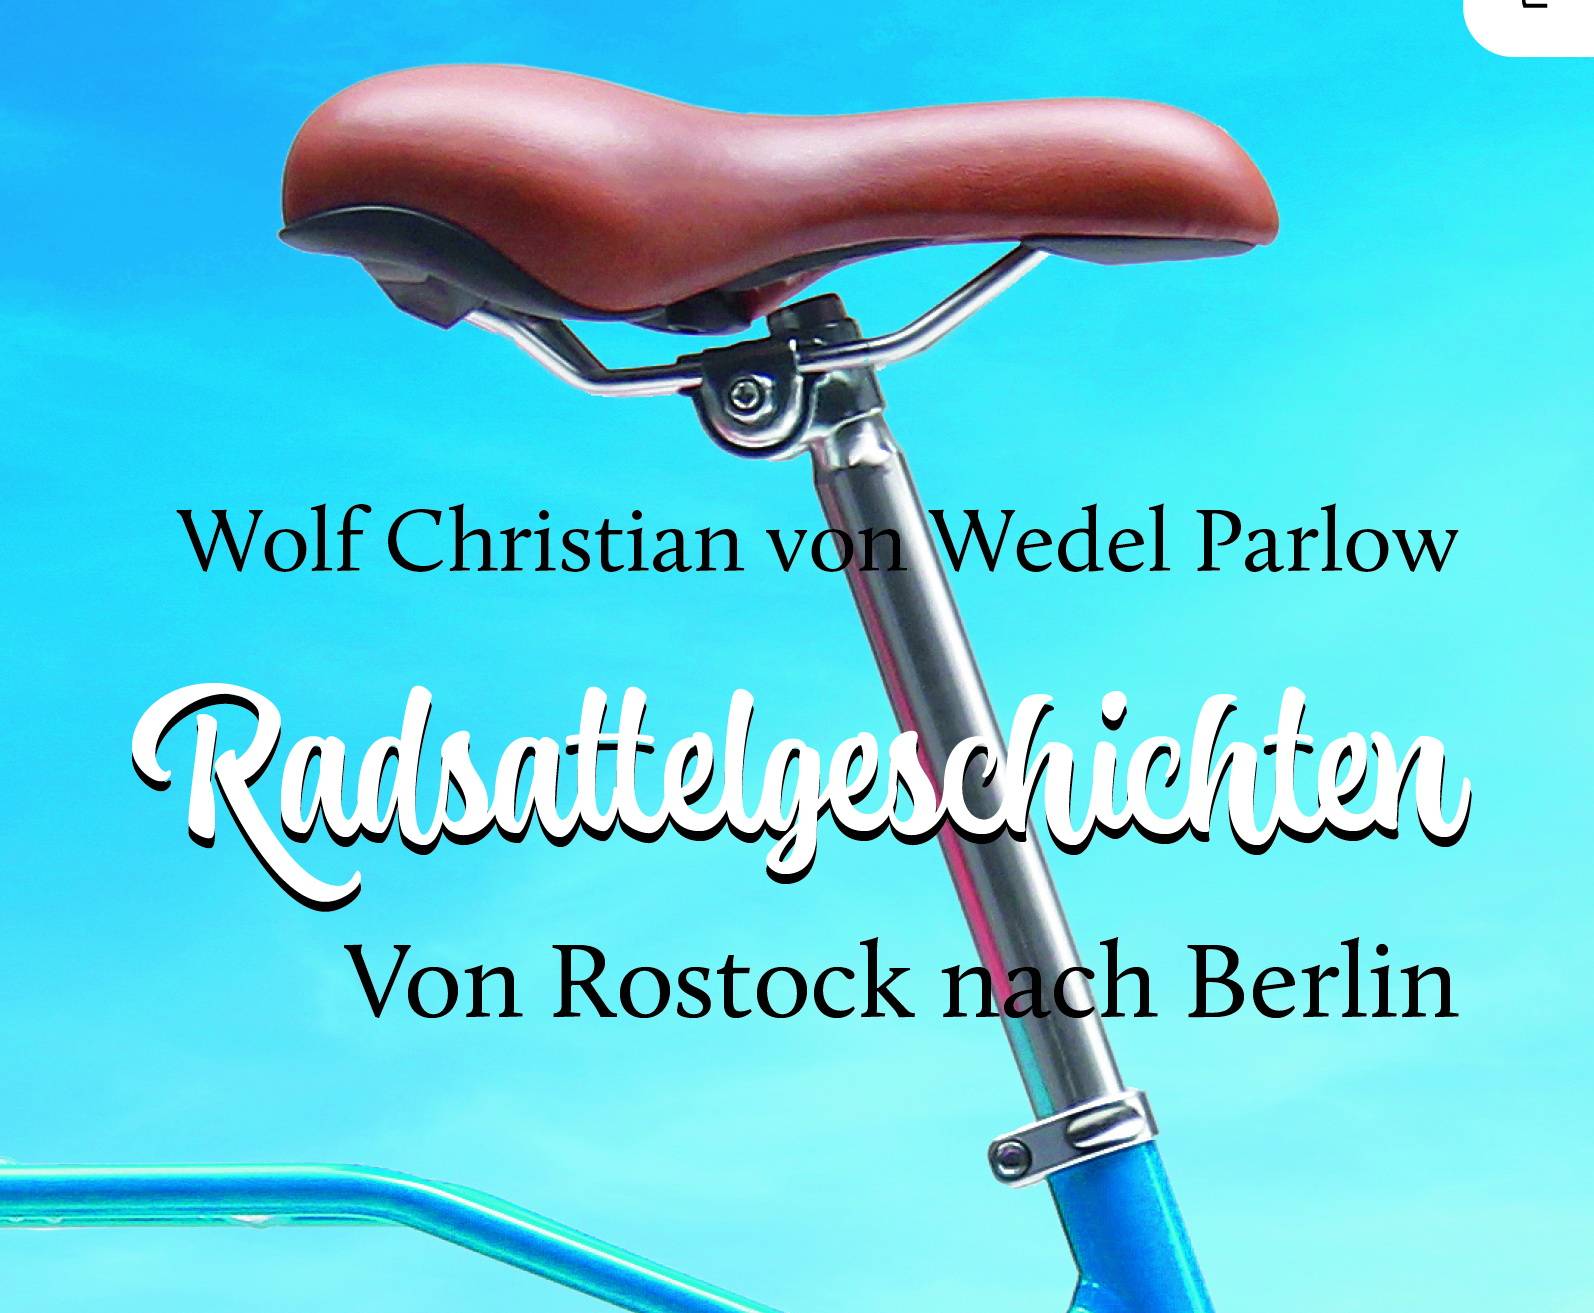  Wolf Christian von Wedel Parlows „Radsattelgeschichten“ kosten im Buchhandel 14 Euro. 